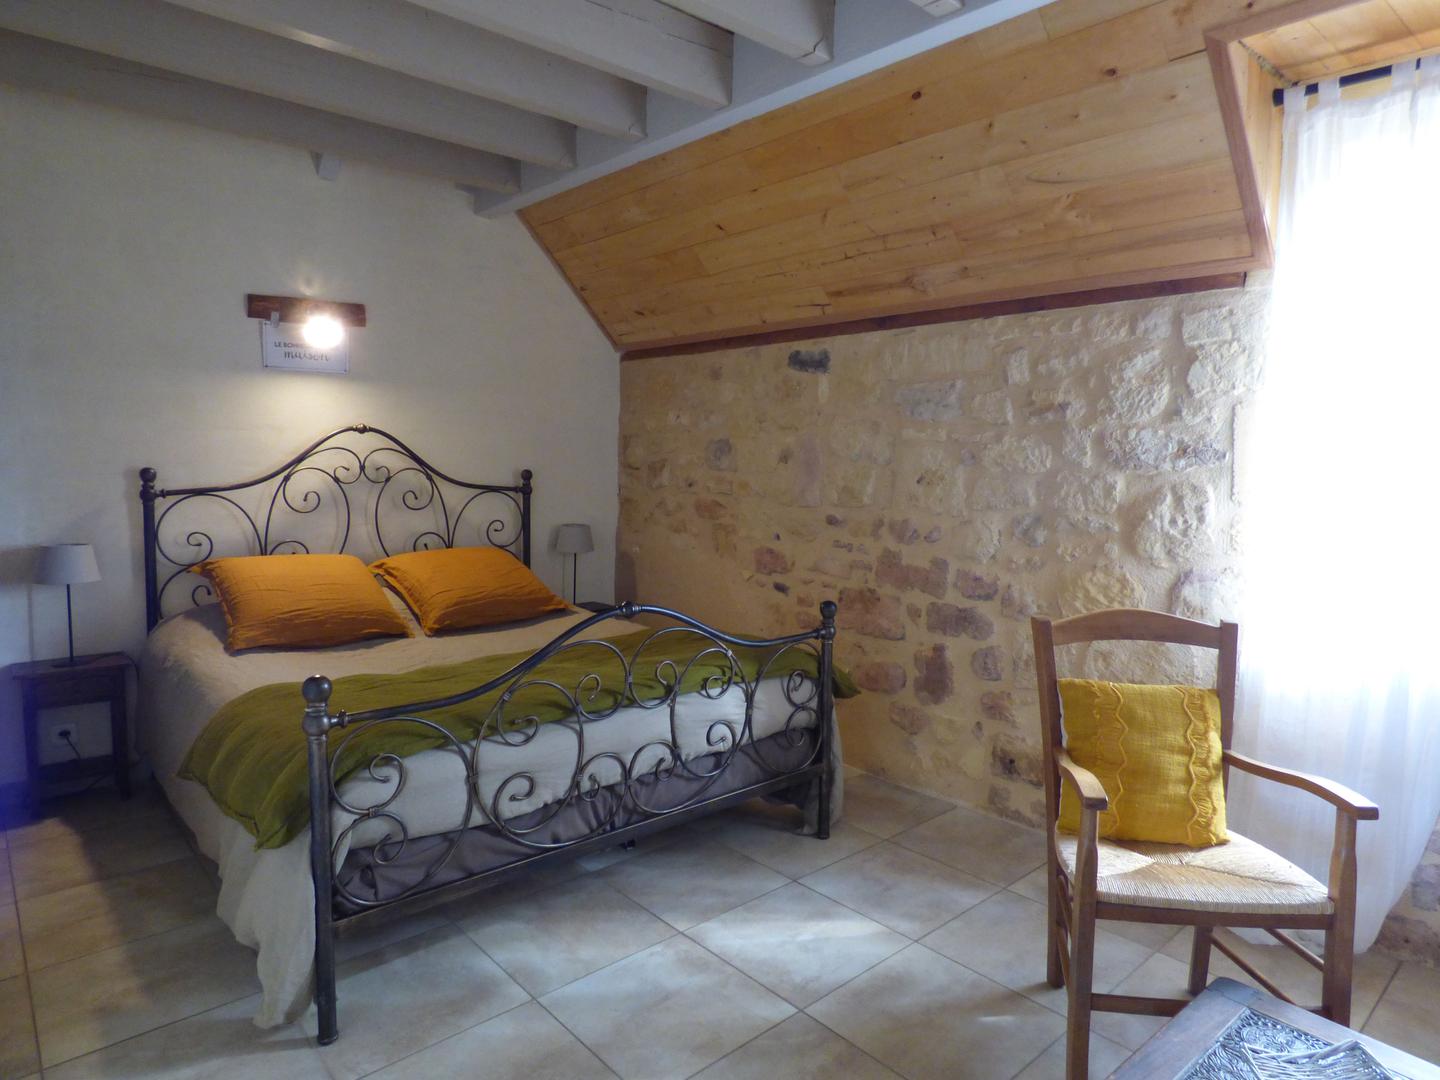 Hôte GreenGo: BRITAVIT Chambres et table d'Hôtes en Périgord - Image 23